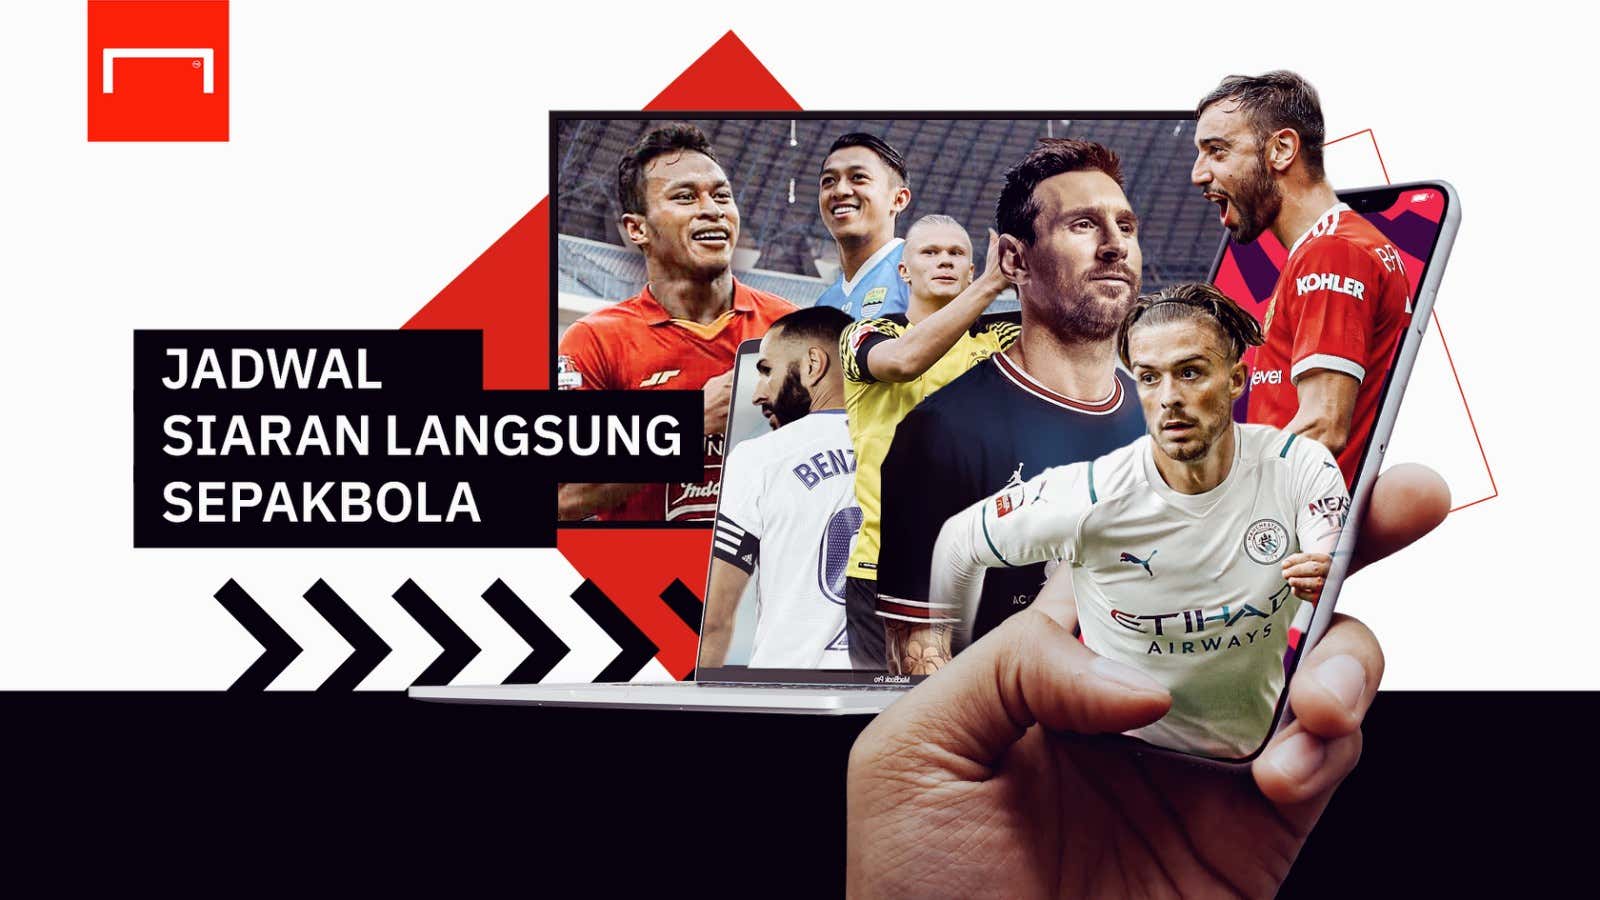 Jadwal TV Siaran Langsung Sepakbola 2021/22 (New)